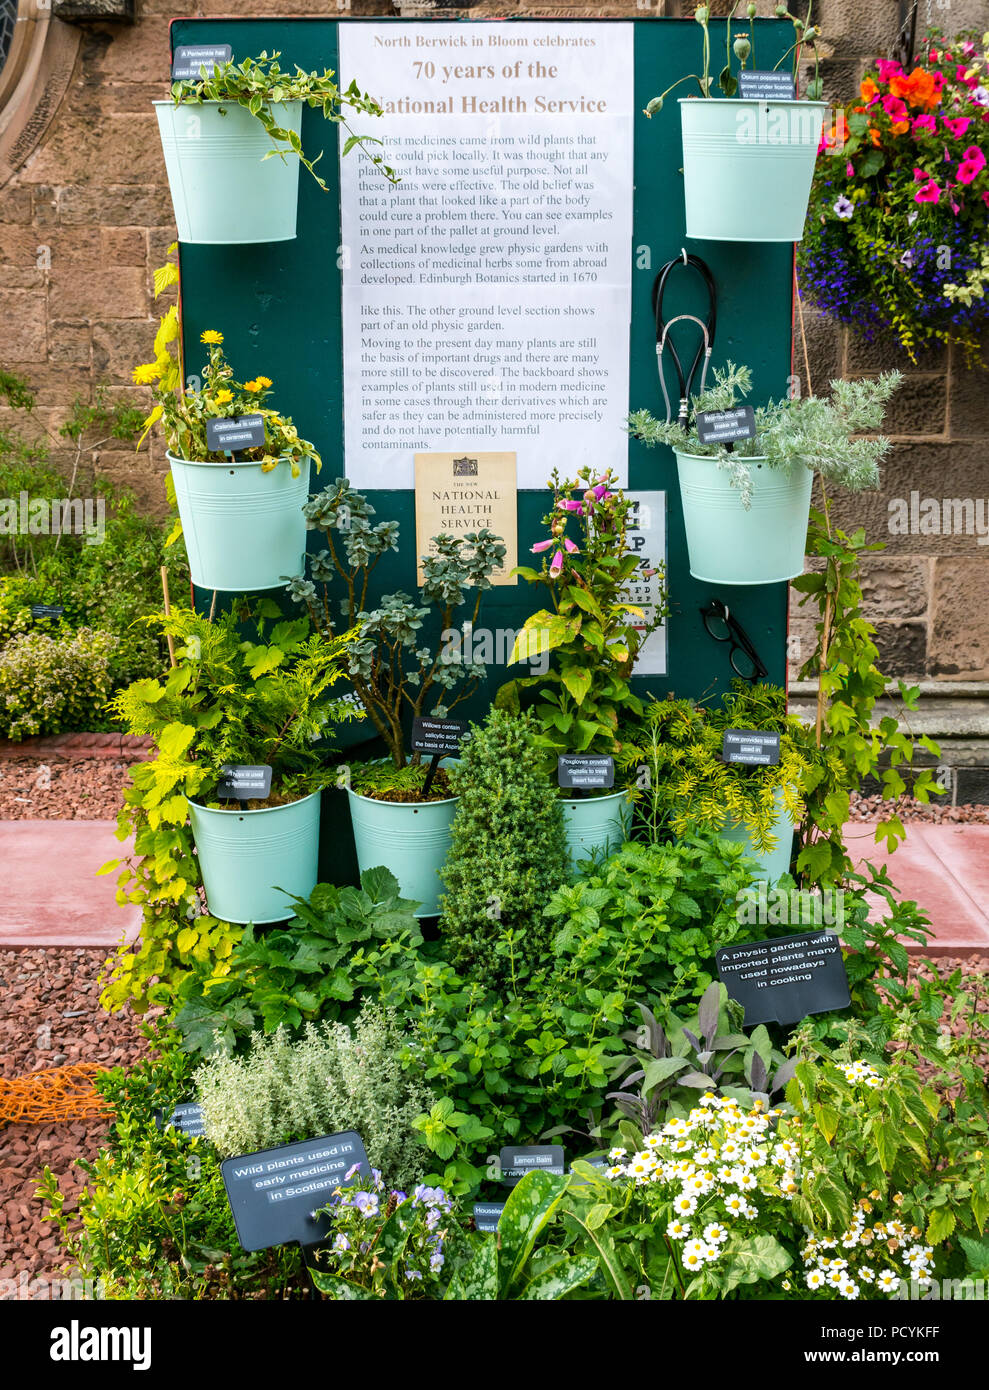 Affichage Floral célèbre 70 ans de plantes médicinales du National Health Service, église abbatiale, North Berwick en fleur, East Lothian, Scotland, UK Banque D'Images